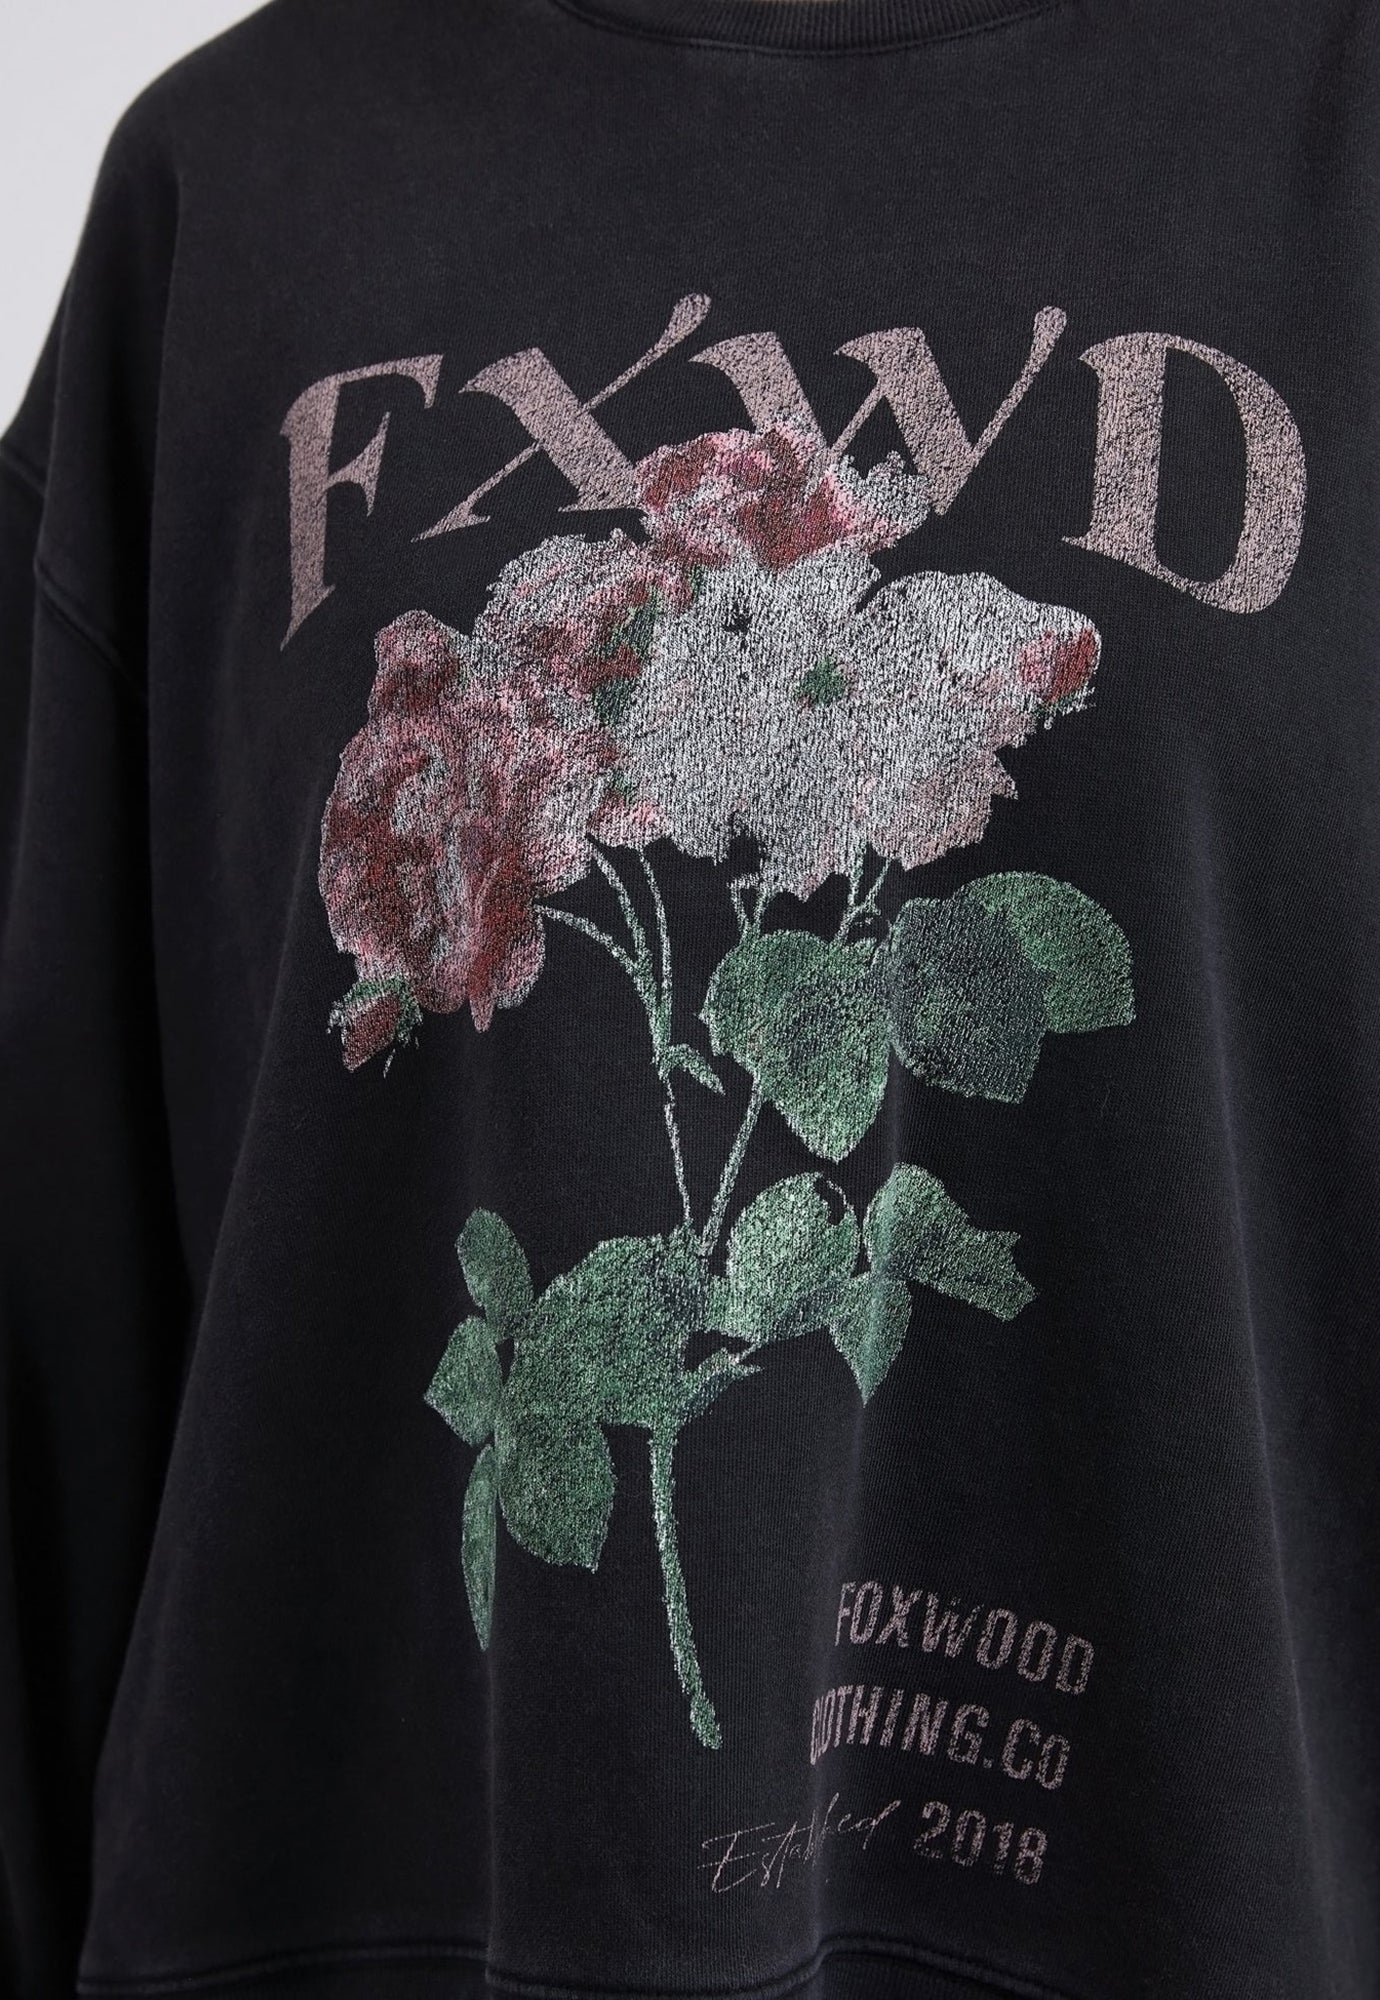 foxwood - rosa crew - washed black